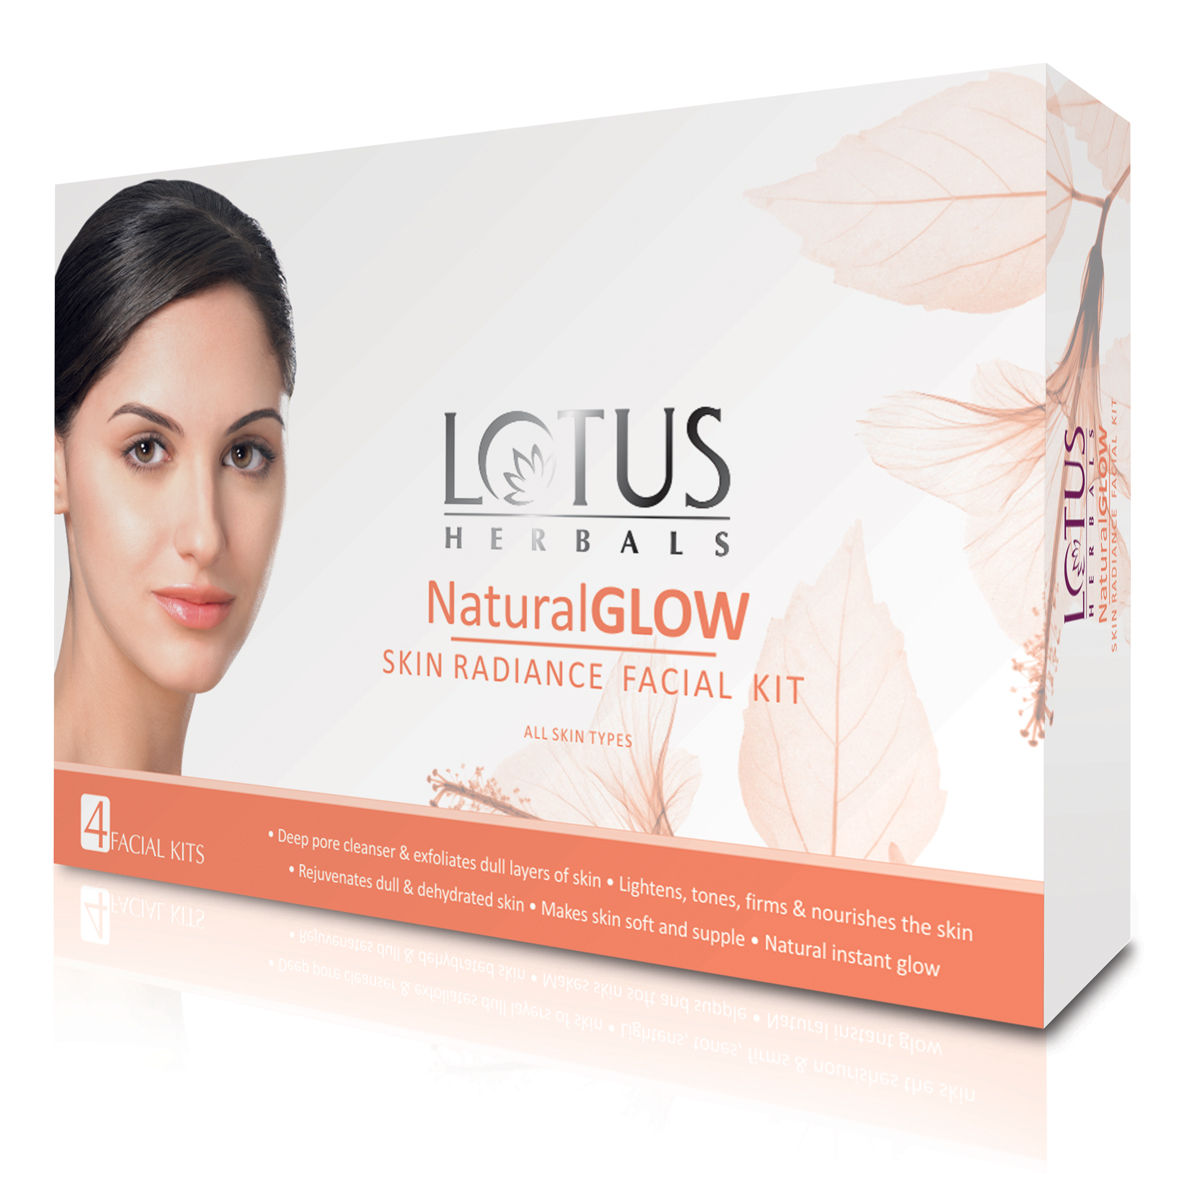 Buy Lotus Herbals Natural Glow Skin Radiance 4 in 1 Facial Kit | Deep Pore Cleansing | Skin Lightening & Hydrating | 200g - Purplle